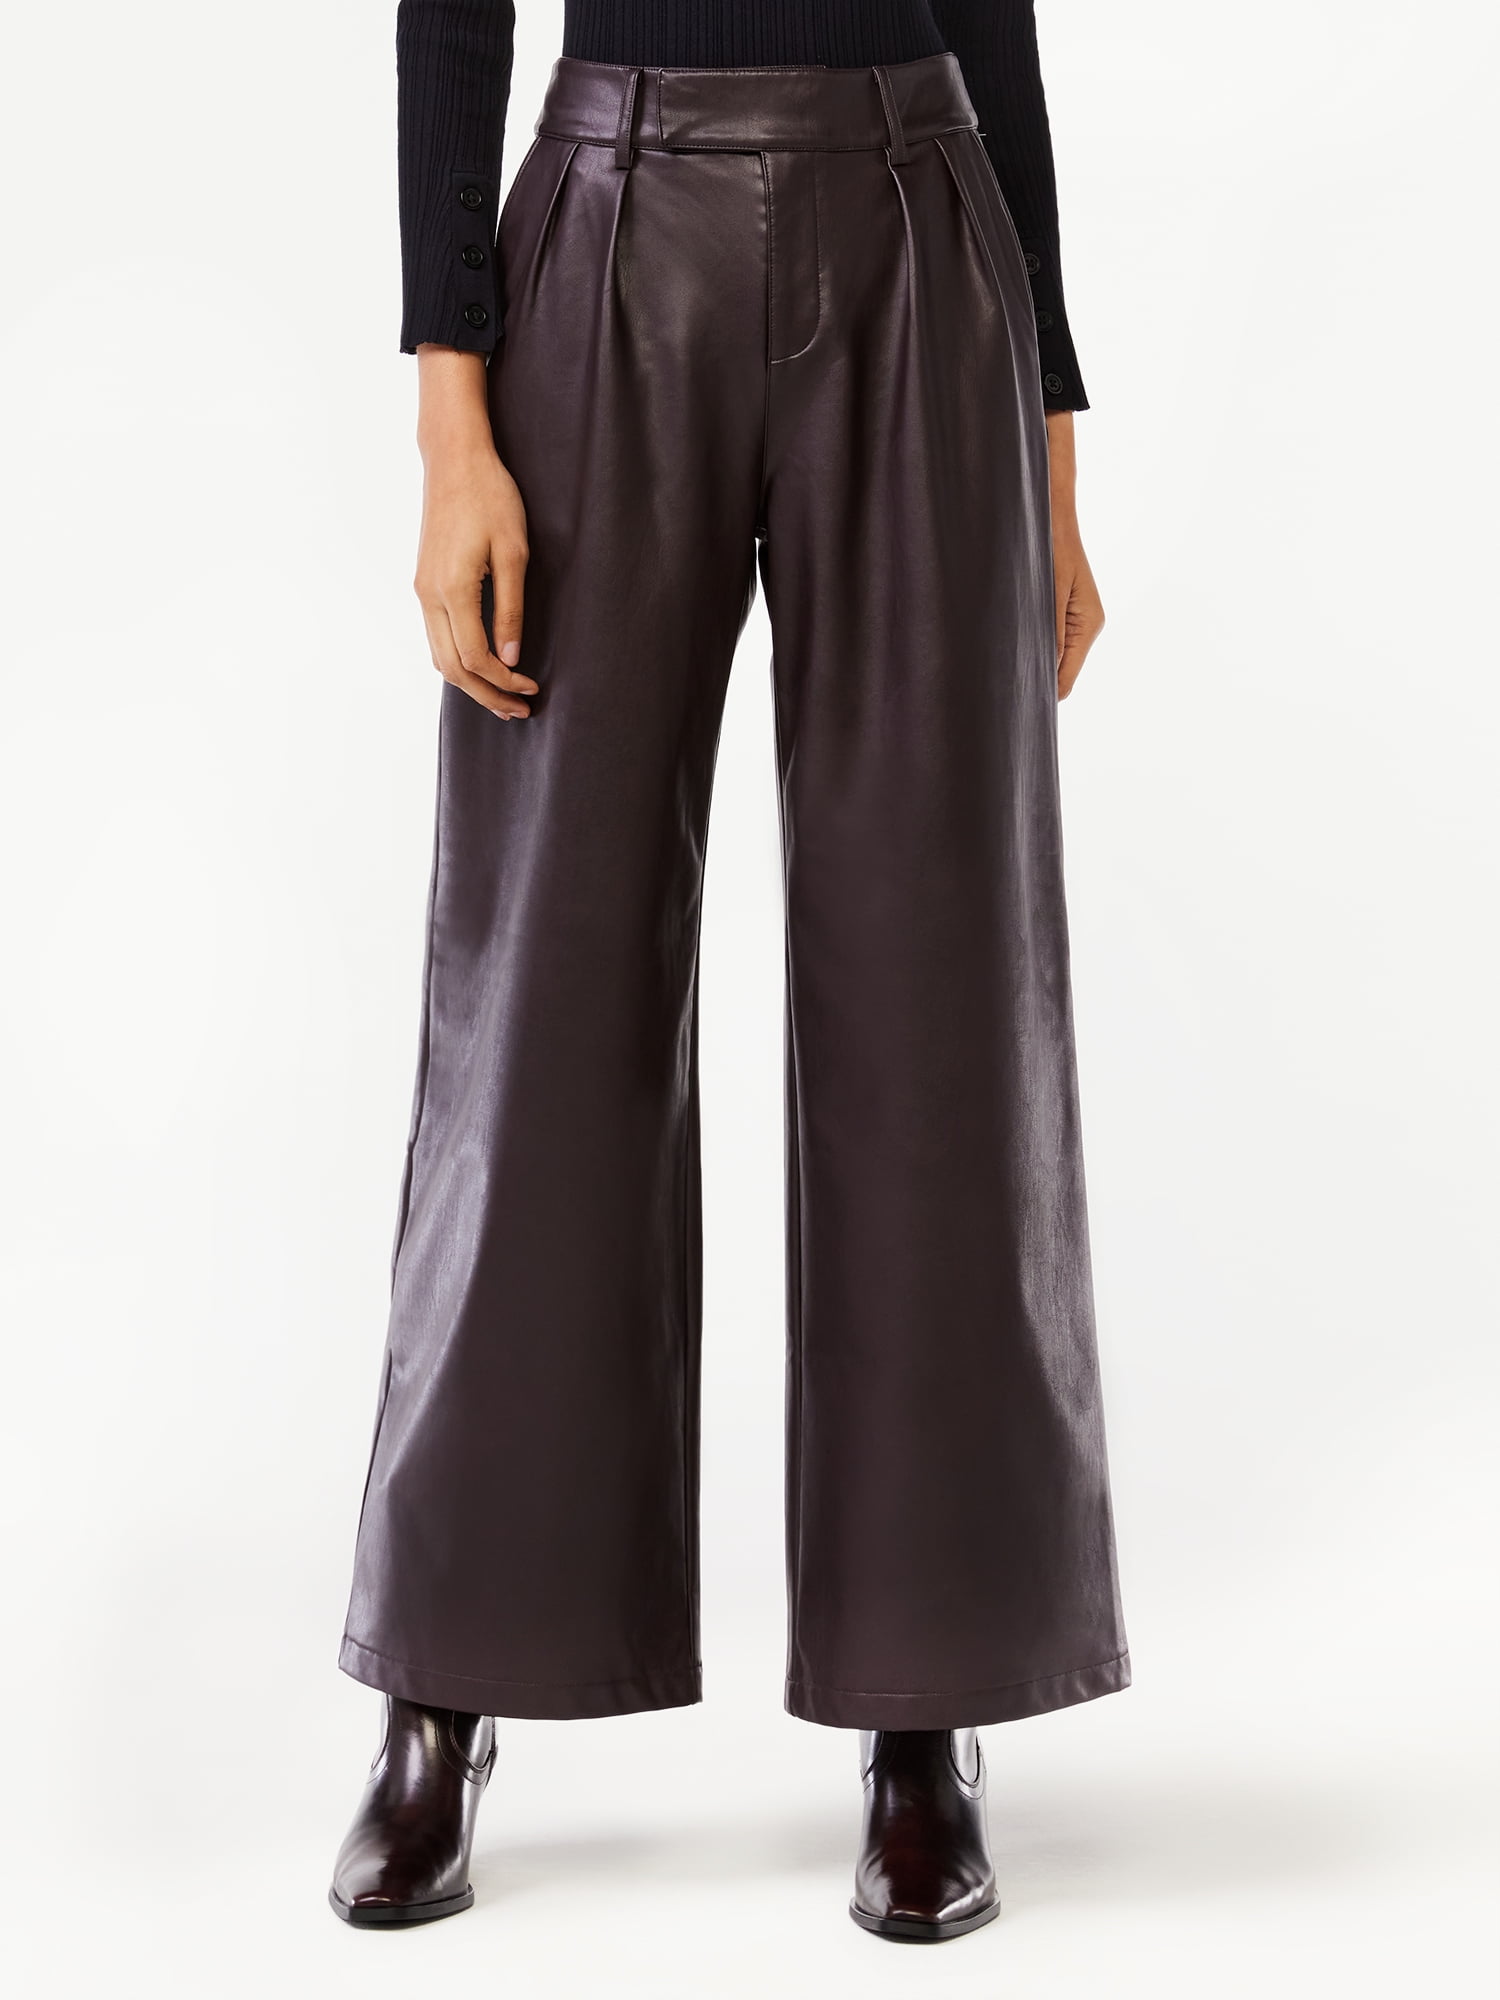 Scoop Women's Faux Leather Wide Leg Pants - Walmart.com